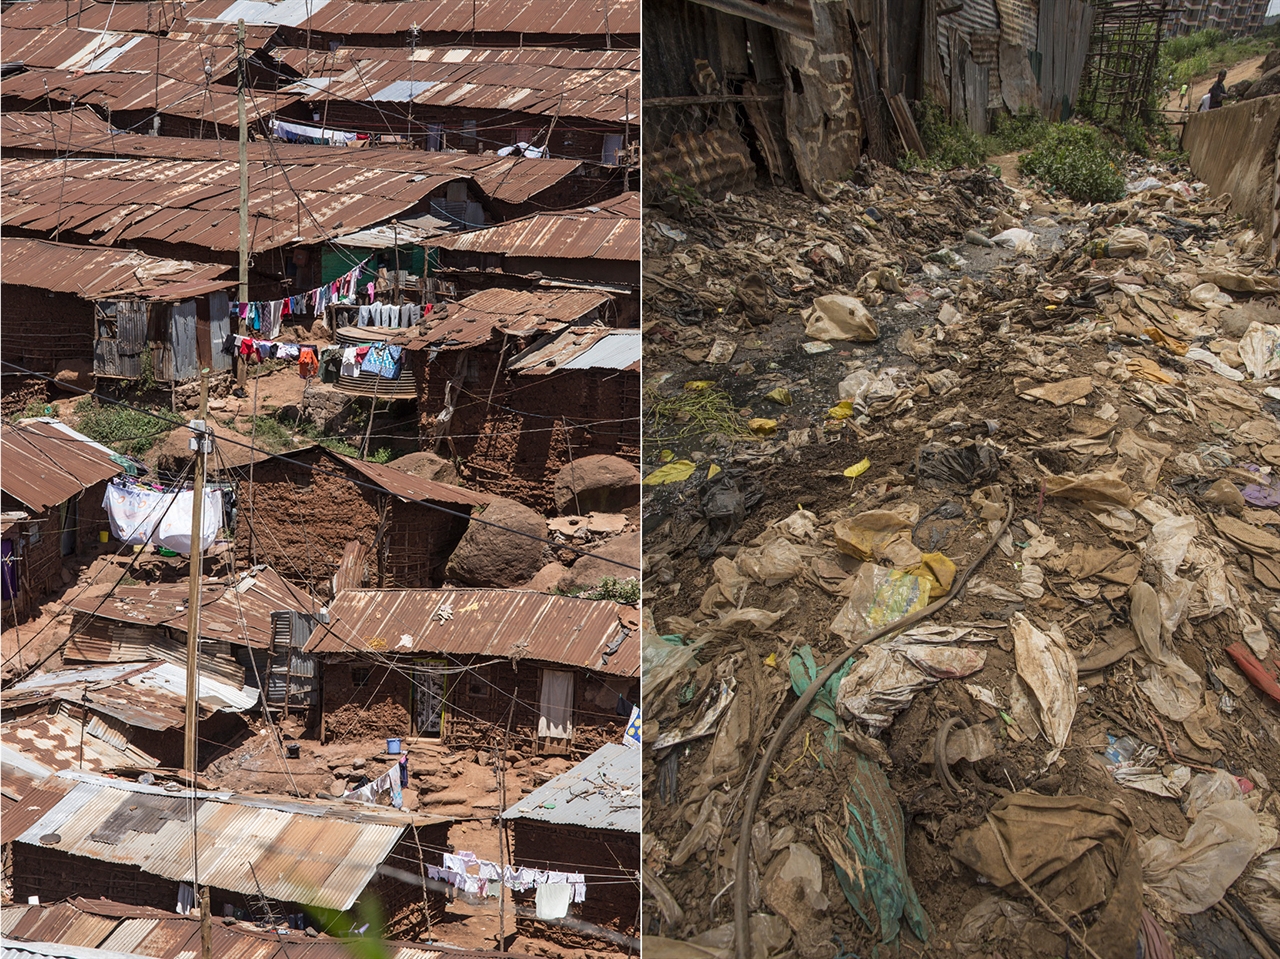  (왼쪽) 키베라 지구에는 양철로 지붕을 인 움막집들이 빽빽하게 들어서 있다. 이런 탓에 인구 집계가 쉽지 않다. (오른쪽) 키베라 지구 안의 모습. 하수구와 쓰레기로 온통 악취가 진동한다. 